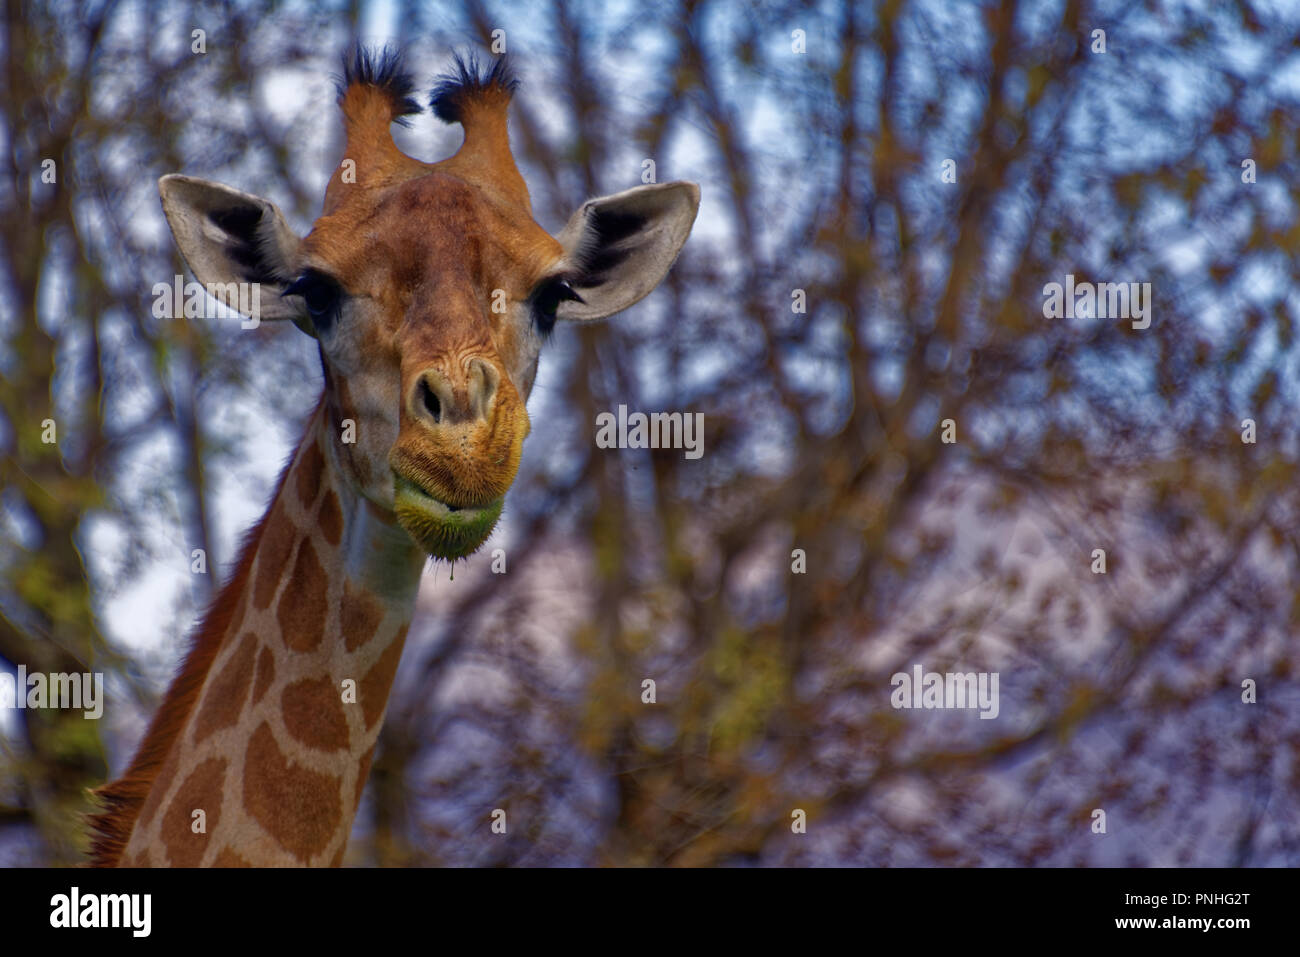 Die Giraffe (GIRAFFA) ist eine Gattung der Afrikanischen selbst-toed ungulate Säugetiere, die größten lebenden Landtiere und die größte Wiederkäuer. Stockfoto